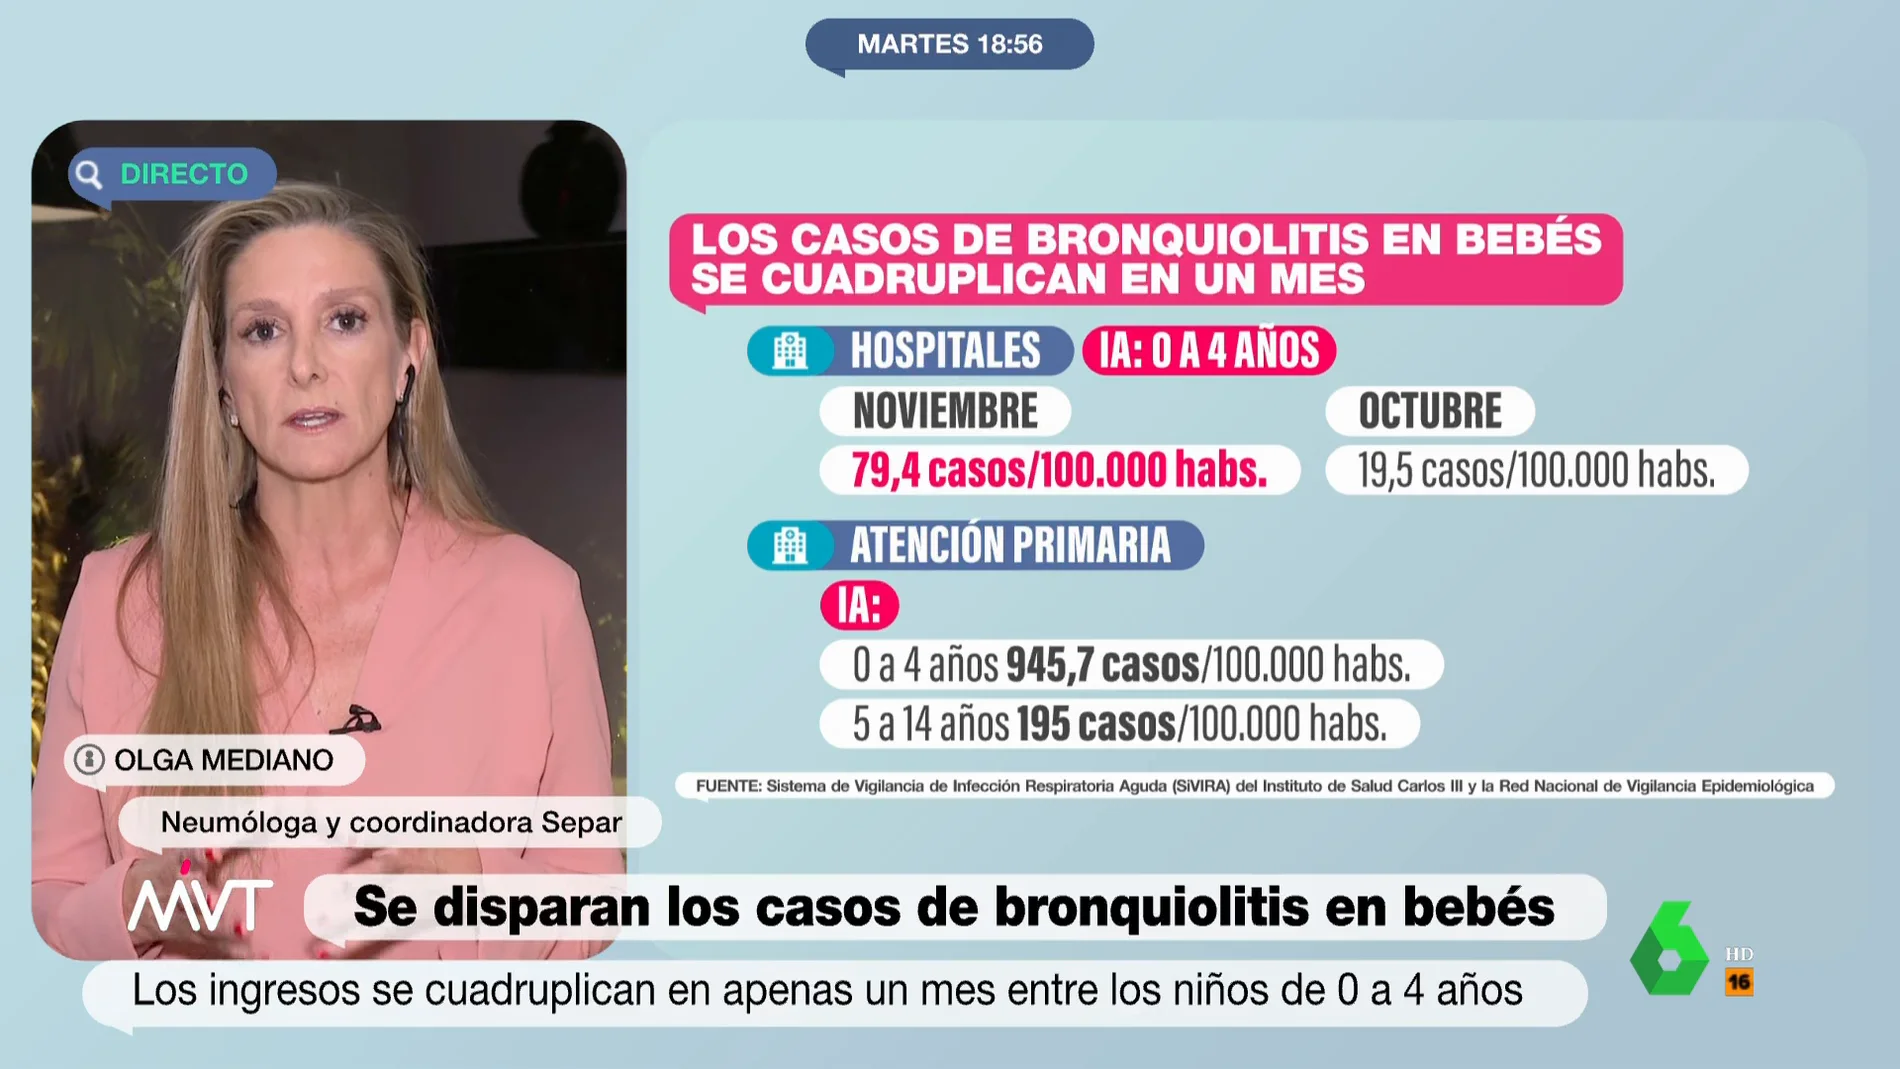 Claves para prevenir y detectar una bronquiolitis: la neumóloga Olga Mediano explica cómo proteger a los más vulnerables